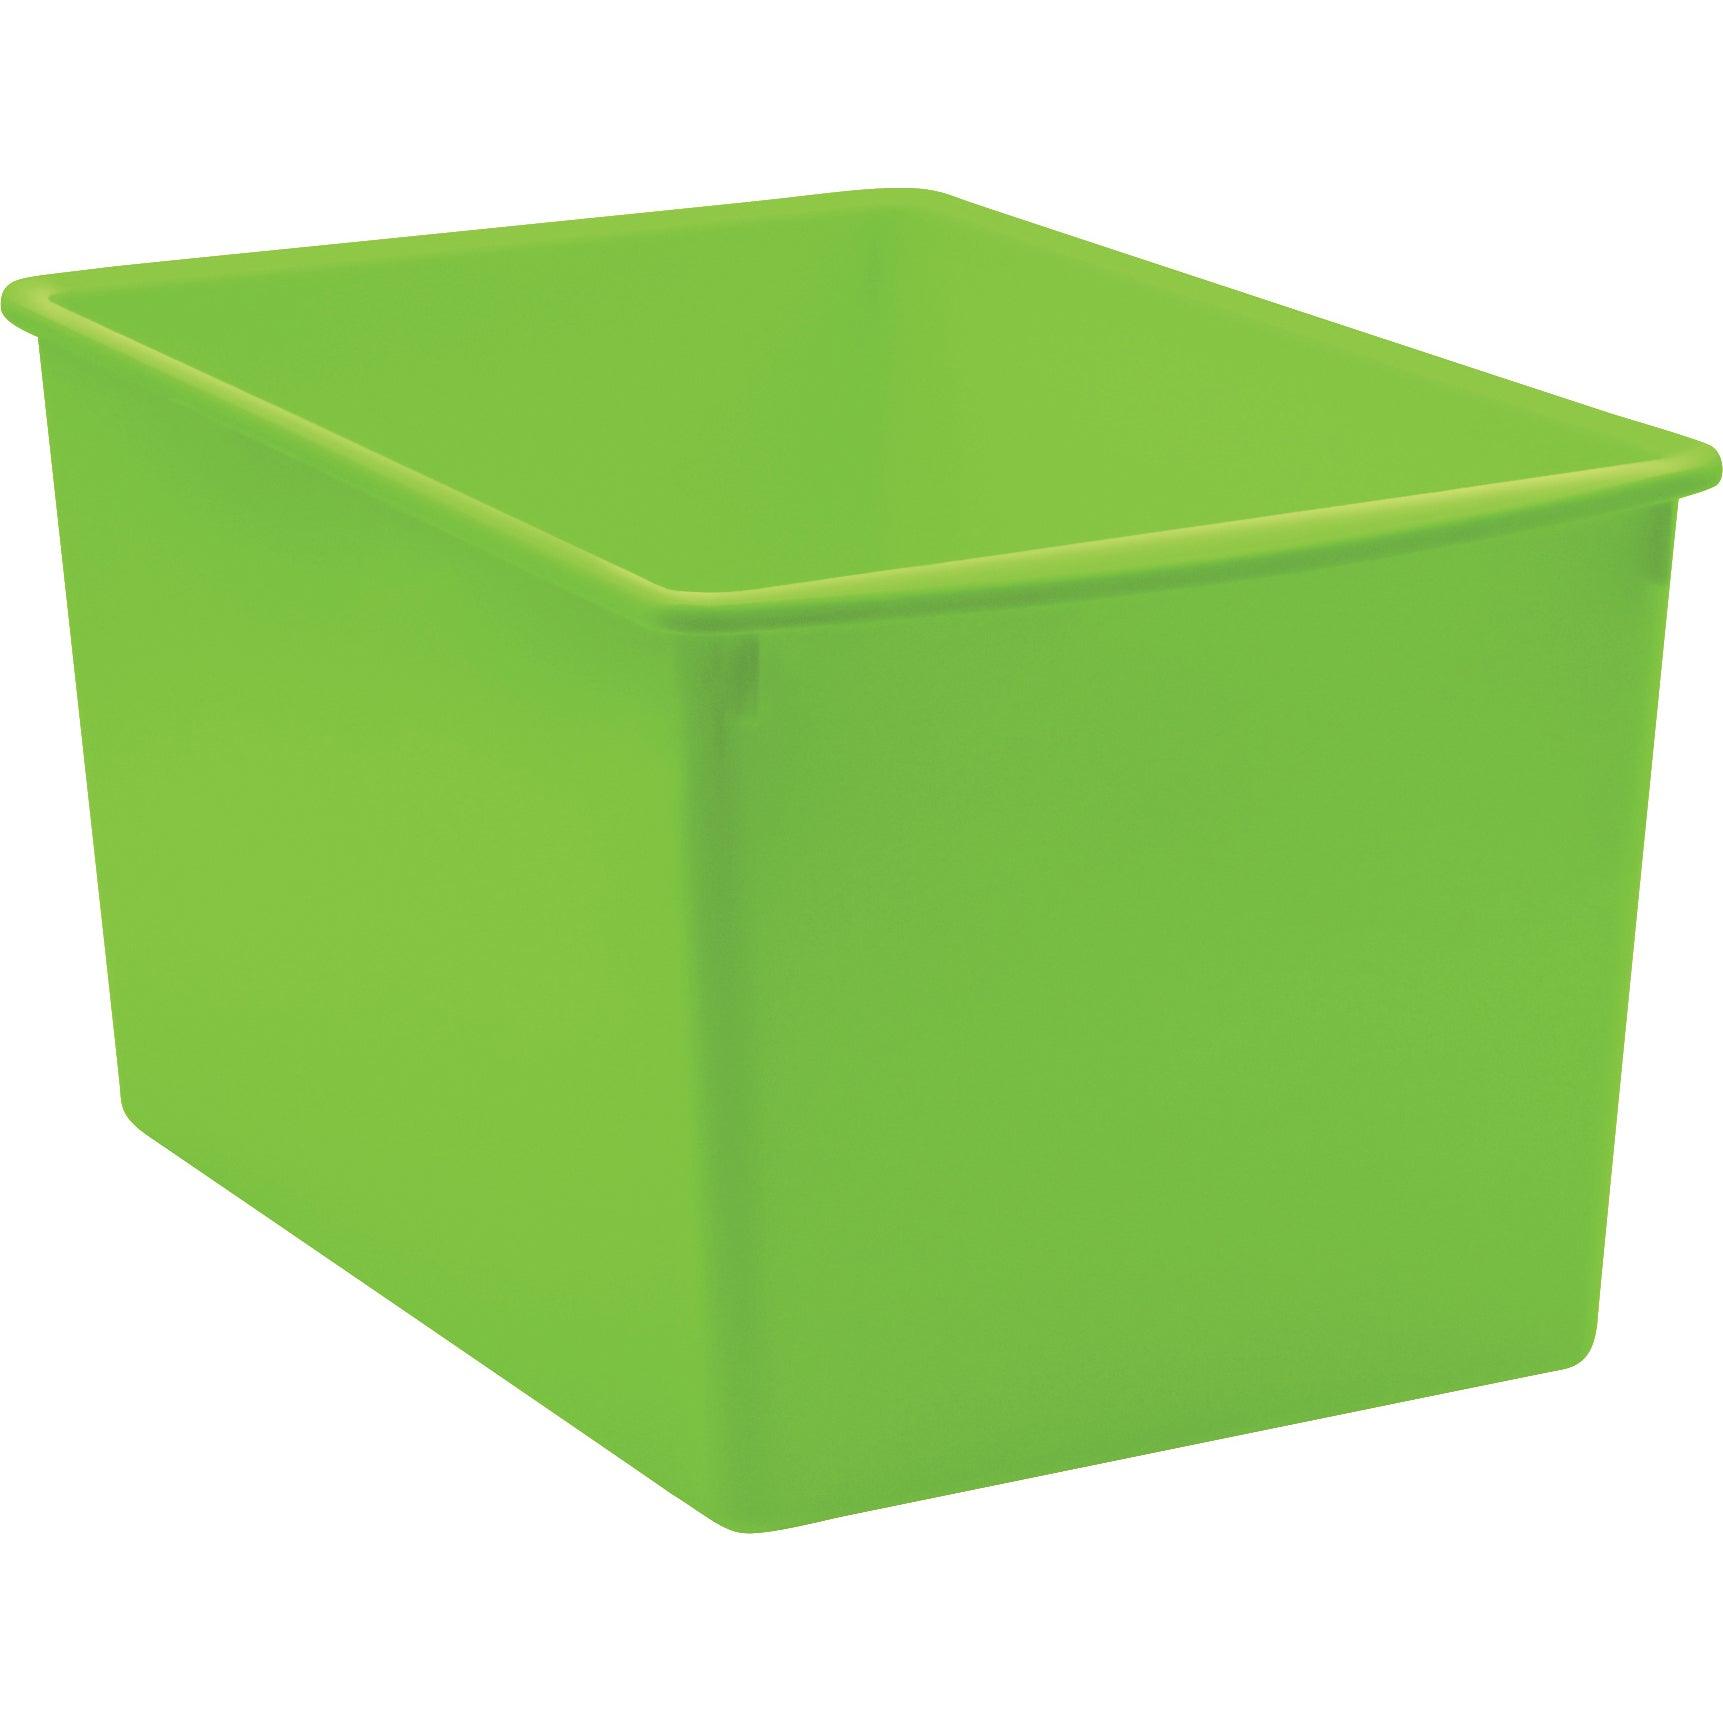 Lime Plastic Multi-Purpose Bin, Pack of 3 - Loomini